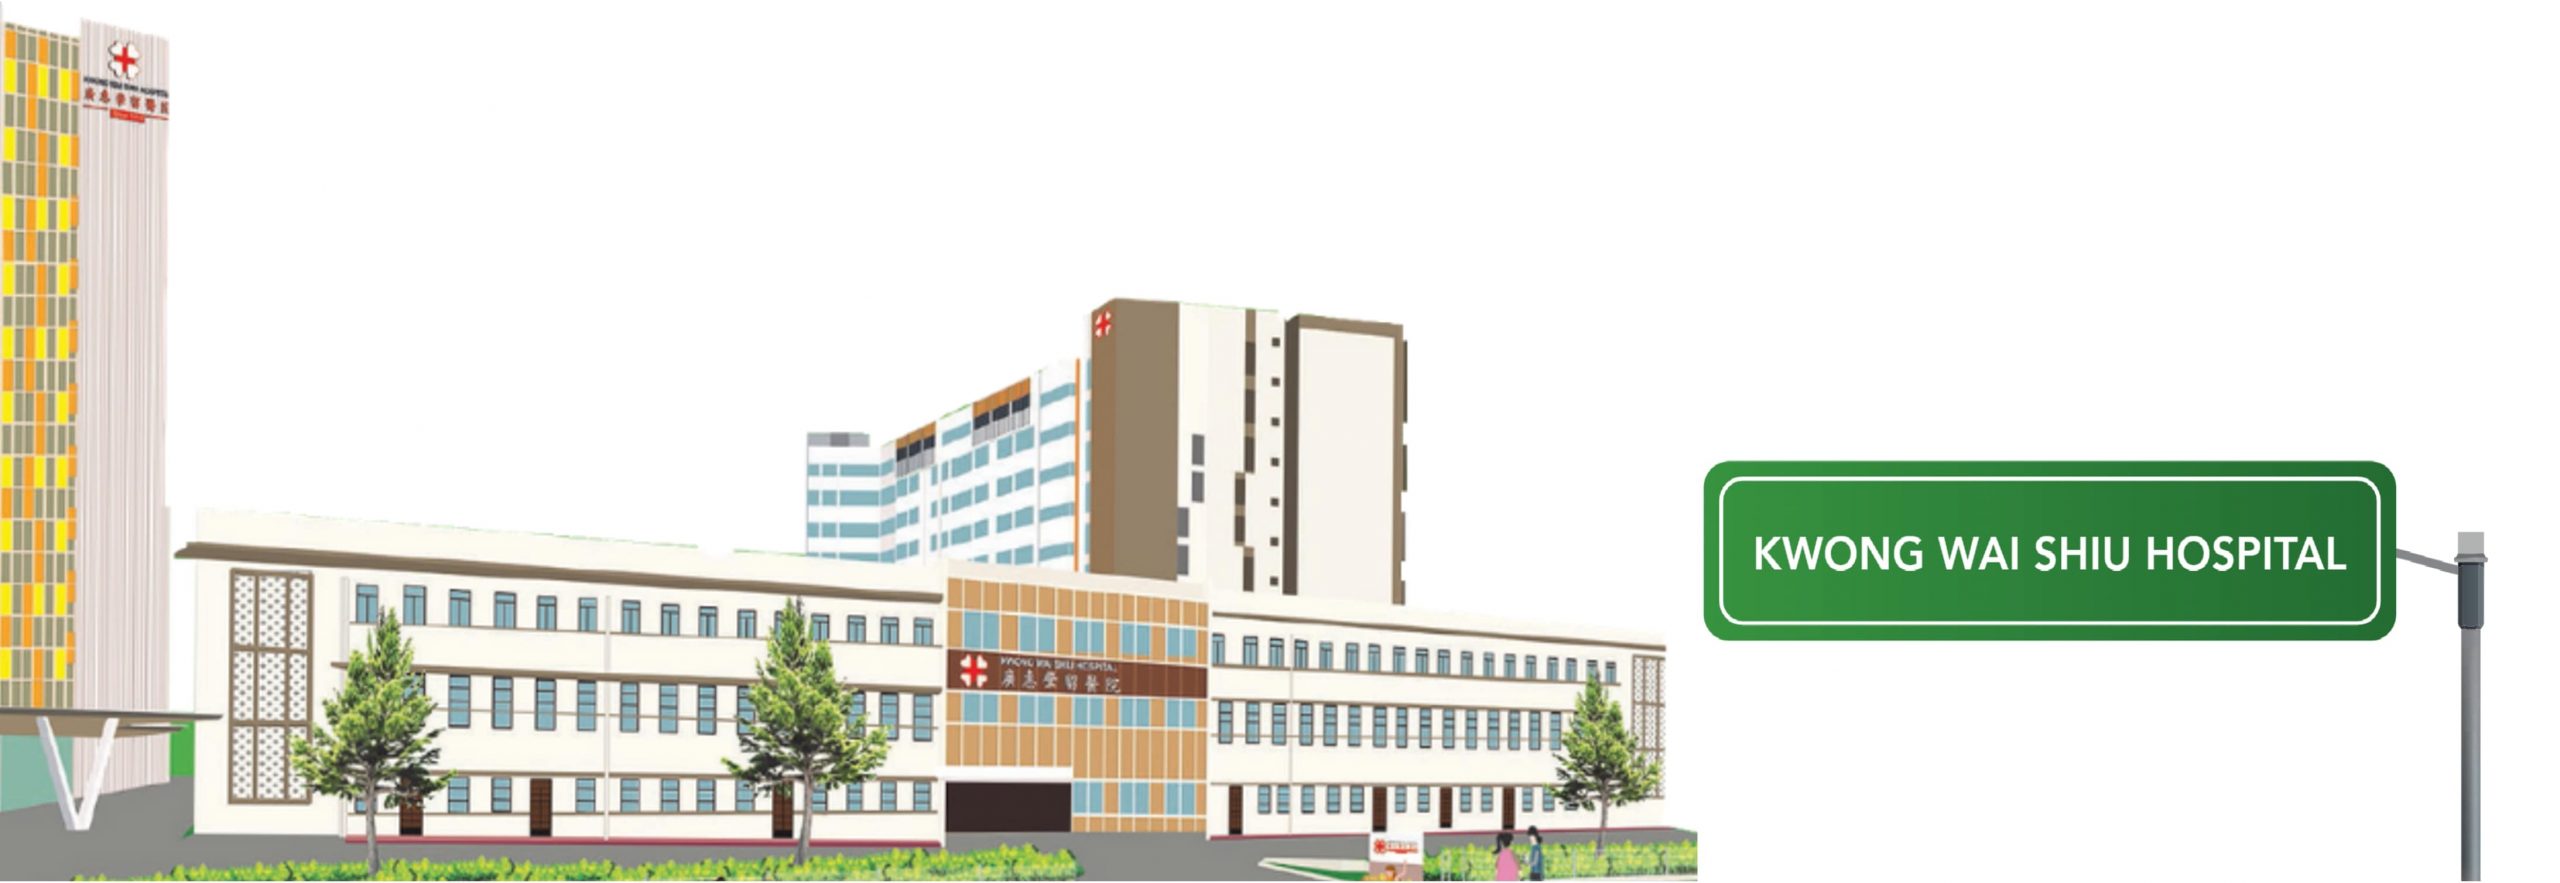 Kwong Wai Shiu Hospital